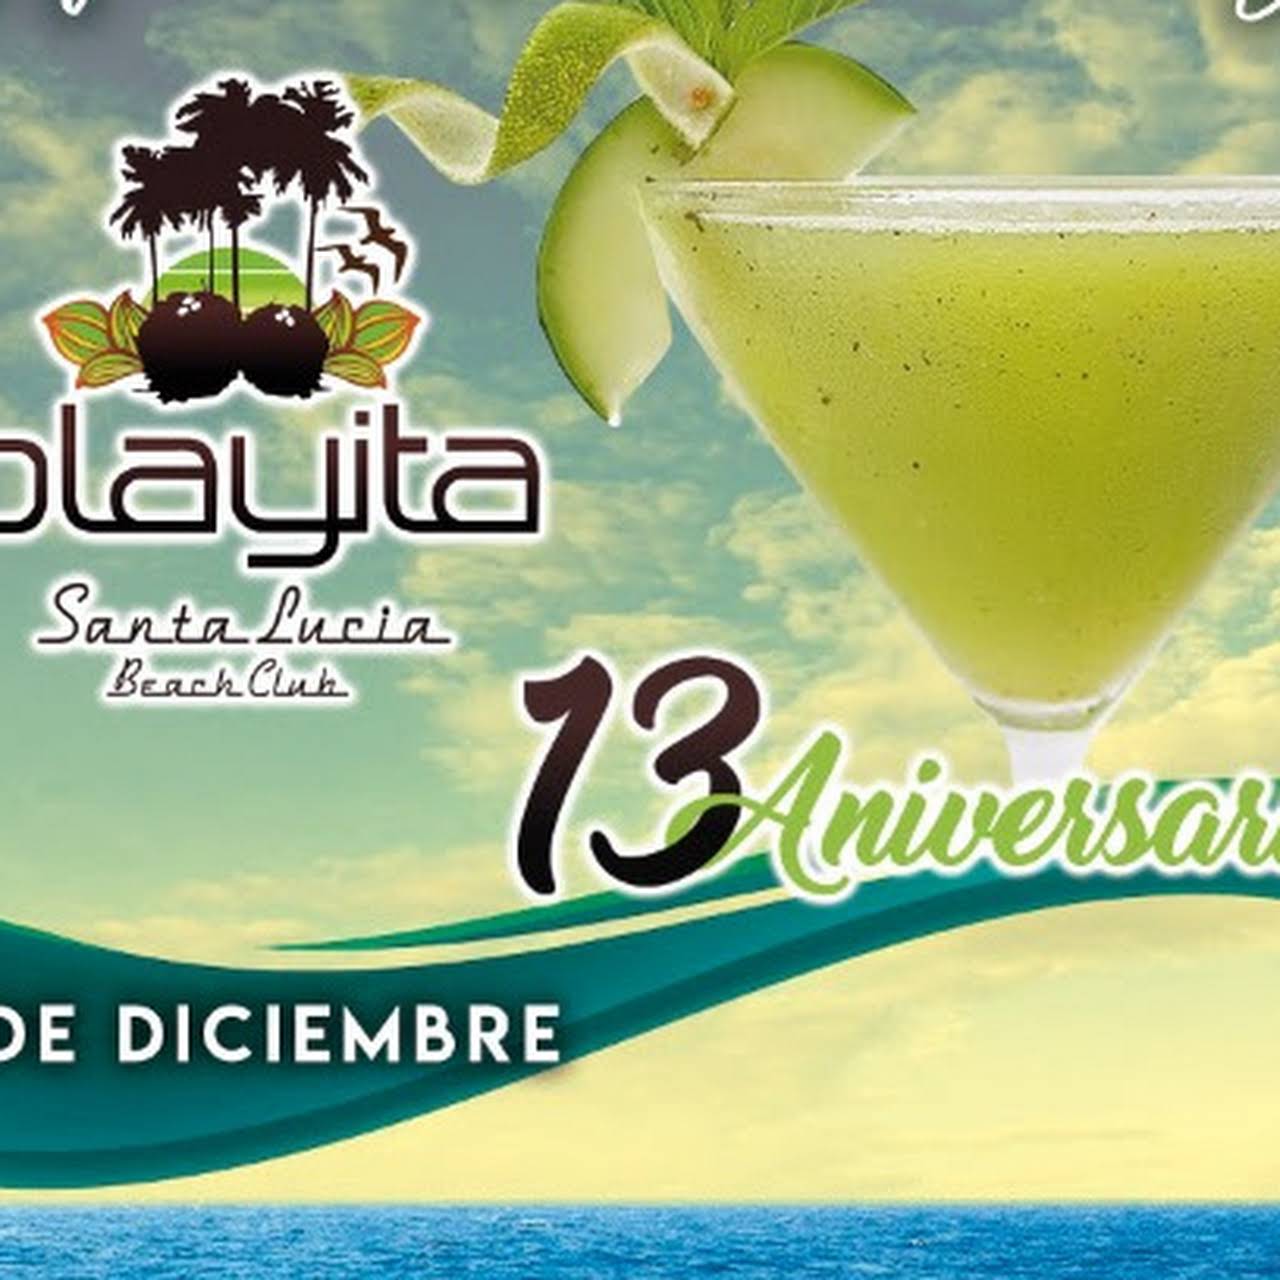 La Playita Santa Lucía - Restaurante Bar y Club de Playa en Acapulco